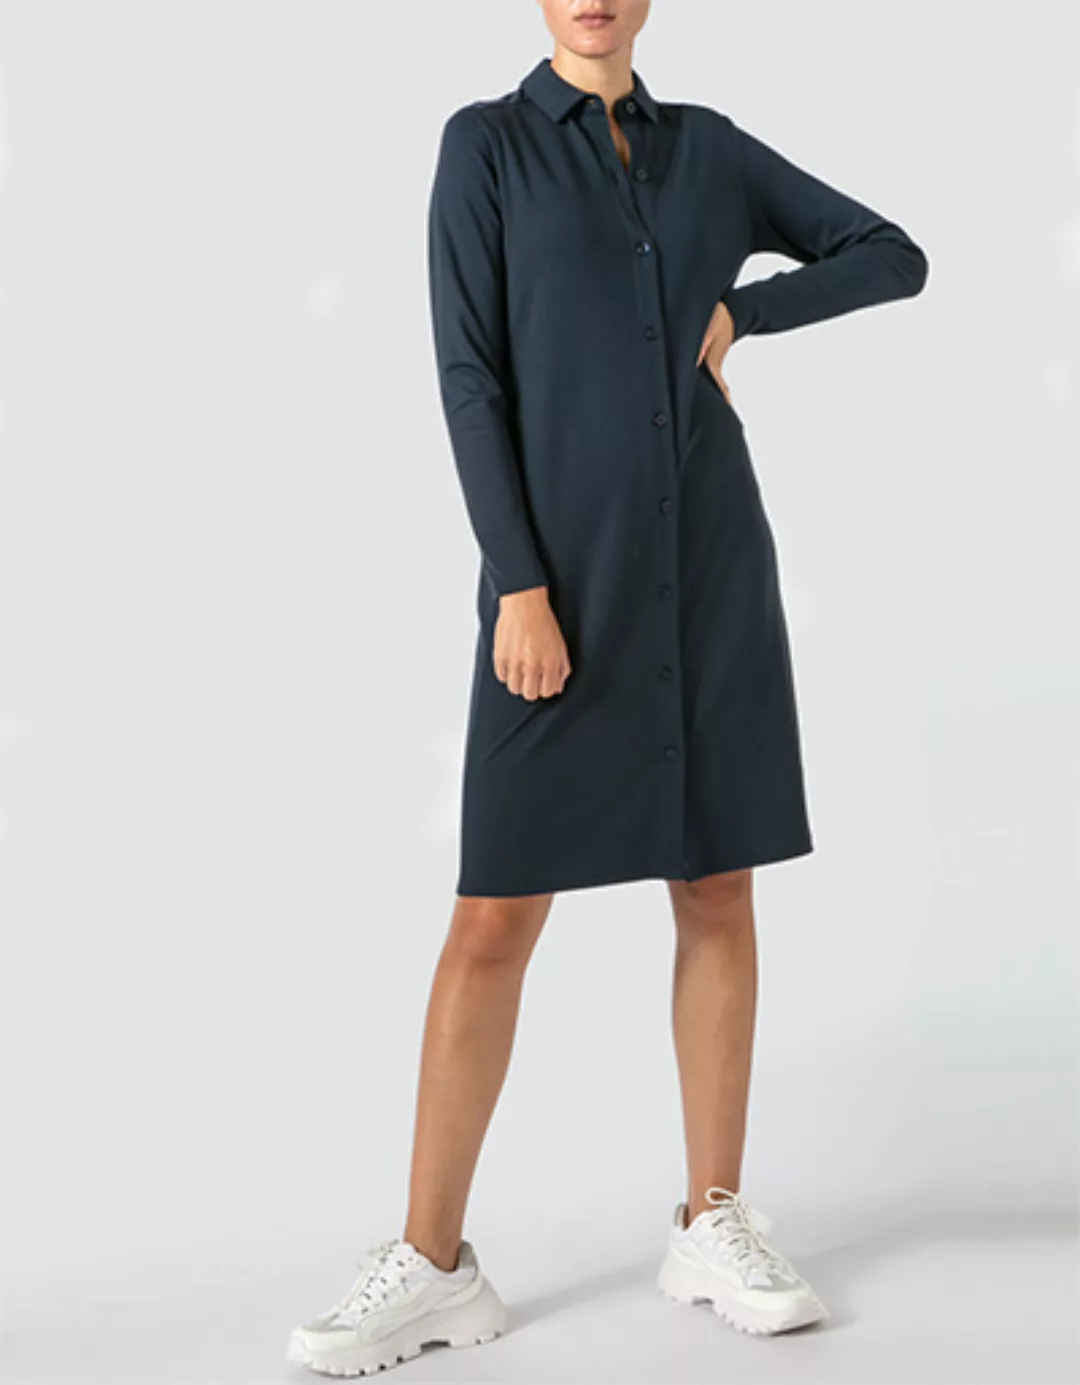 Marc O'Polo Damen Kleid 008 3013 59187/812 günstig online kaufen